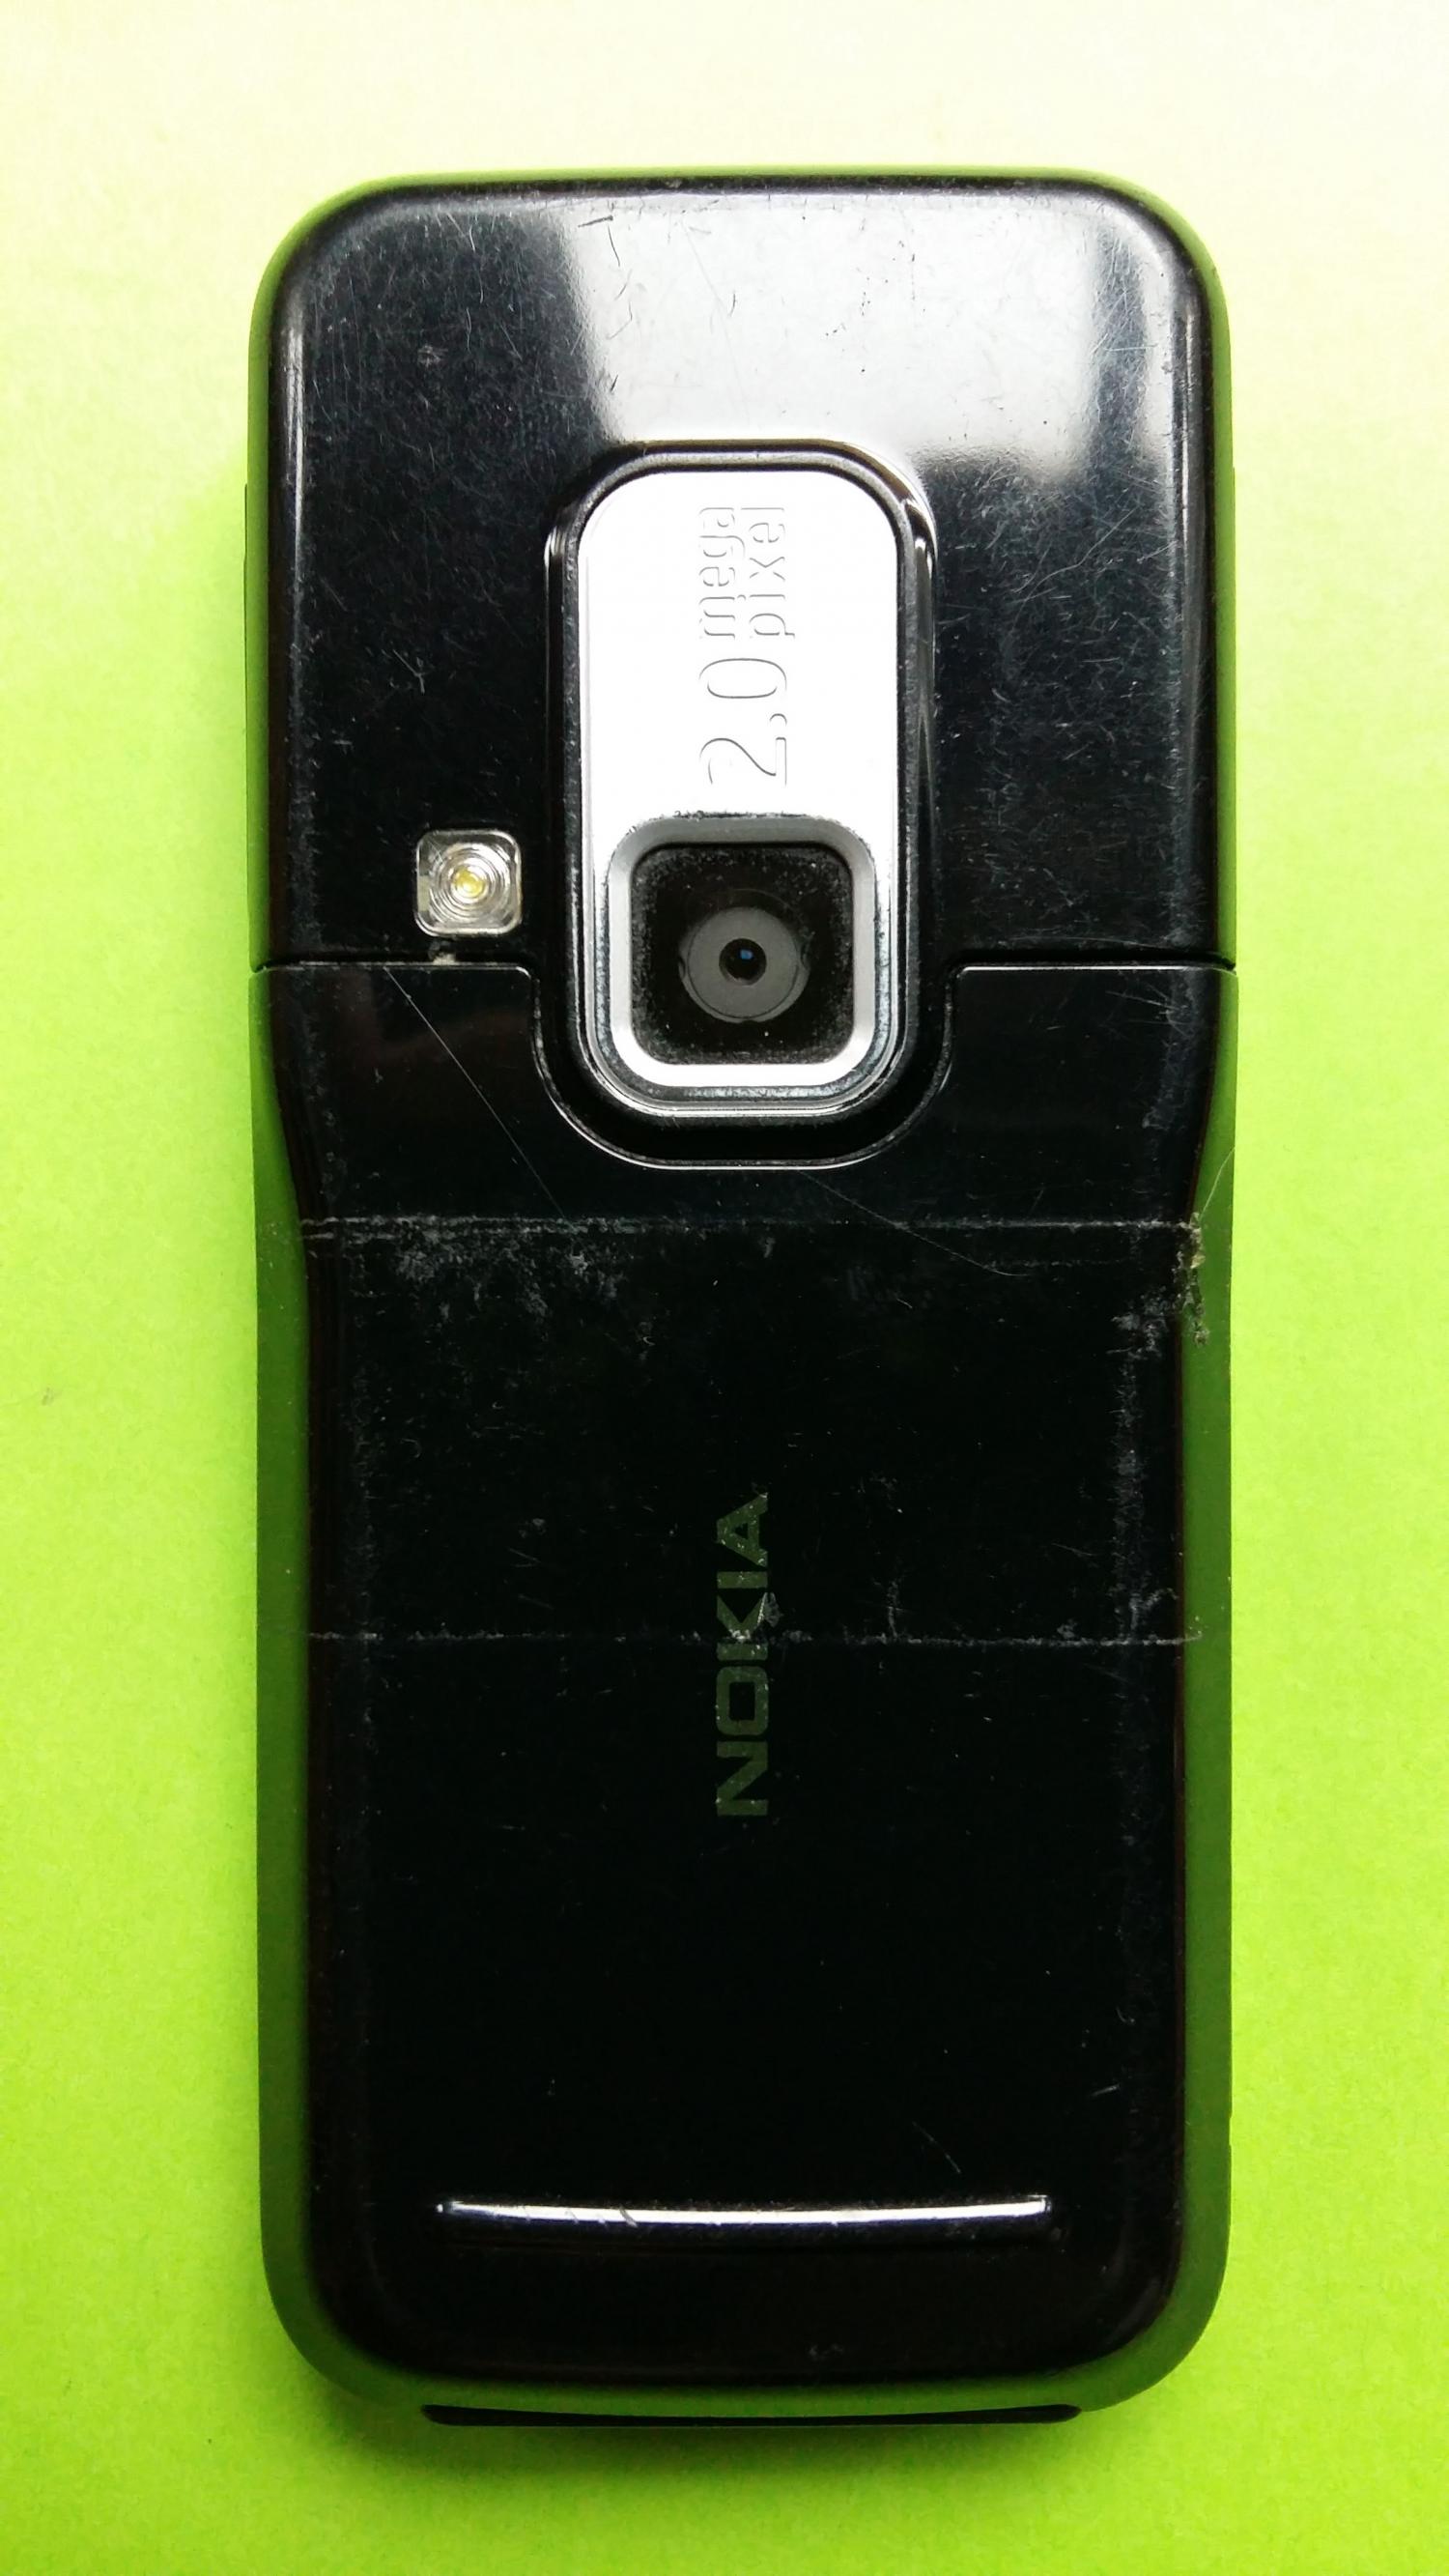 image-7305093-Nokia 6120C-1 (1)2.jpg